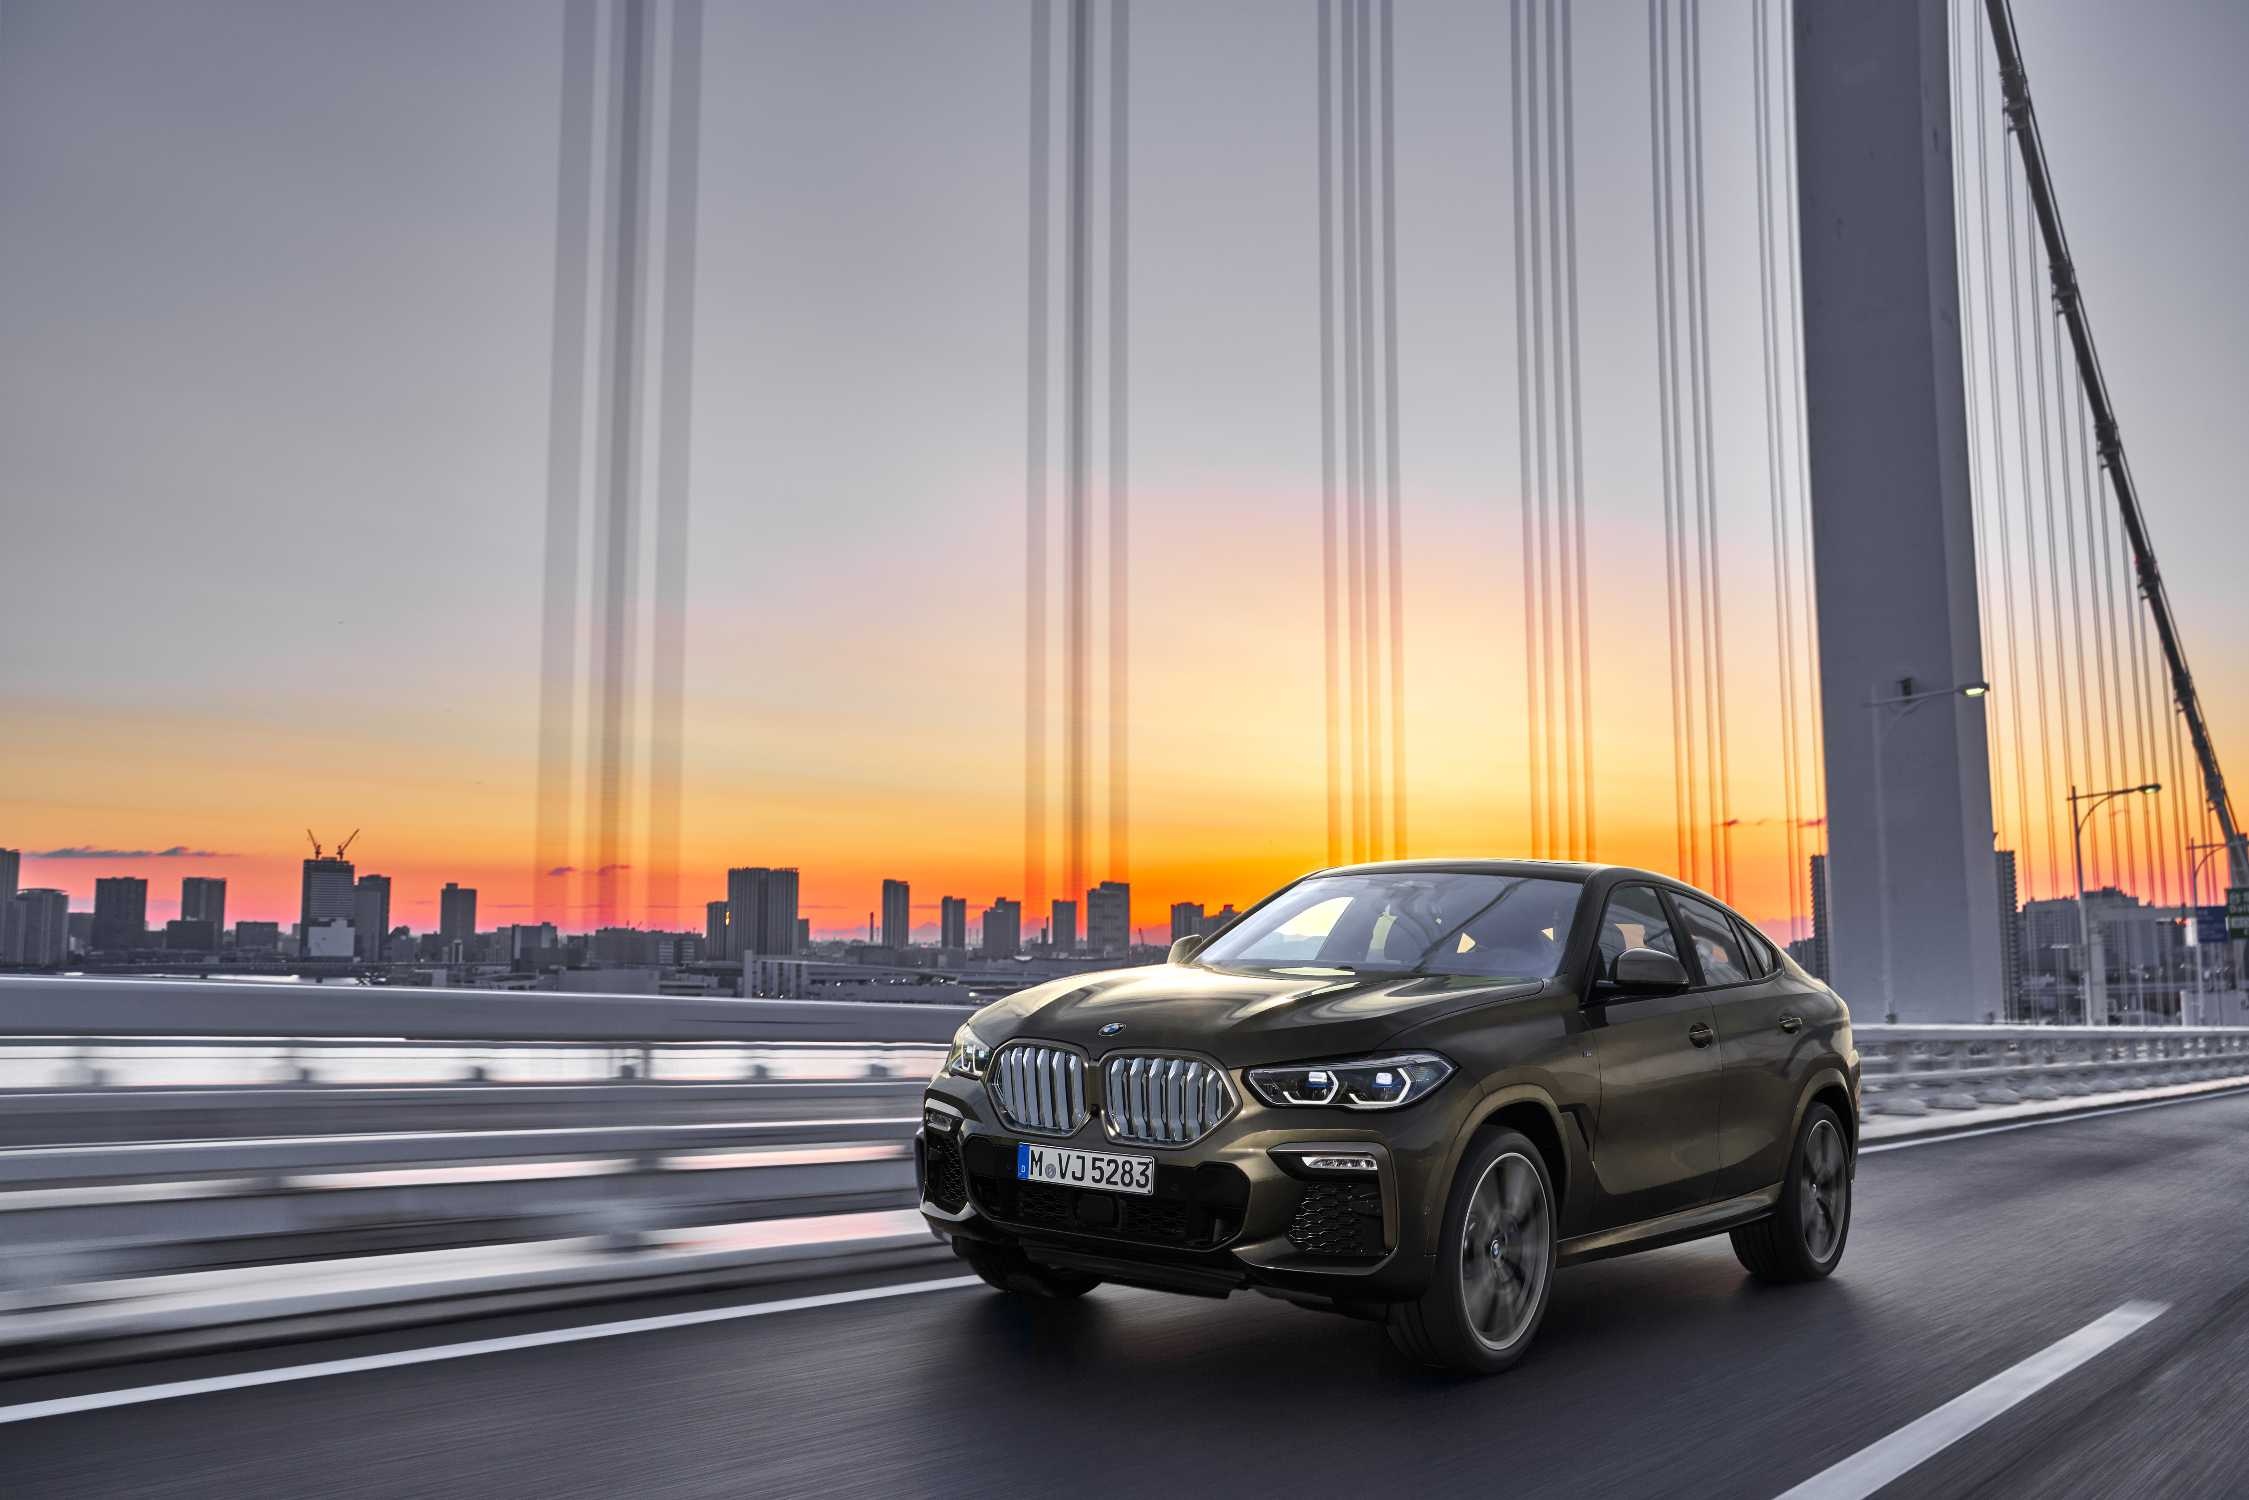 BMW X6, Luxury SUV, Cutting-edge design, Futuristic elements, 2250x1500 HD Desktop